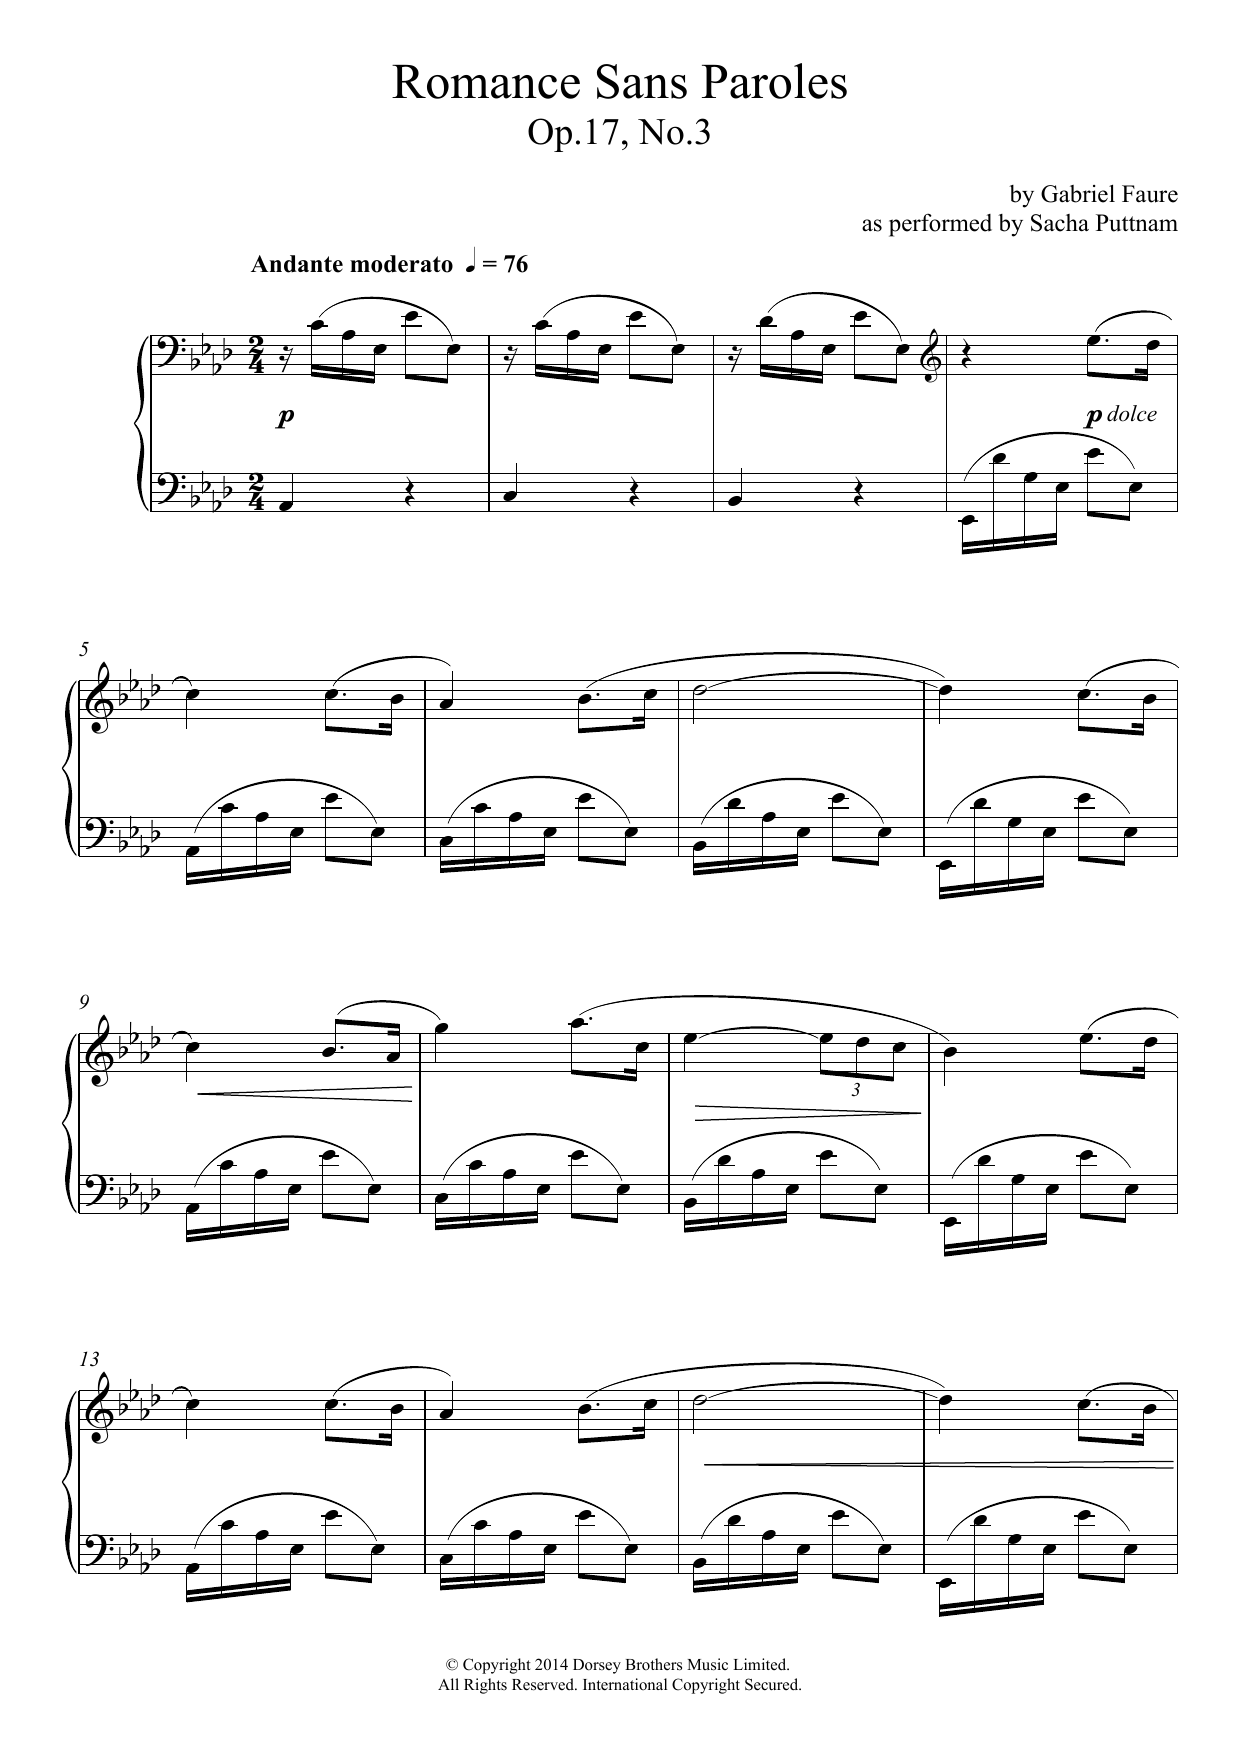 Download Gabriel Fauré Romance Sans Paroles Op.17, No.3 (as pe Sheet Music